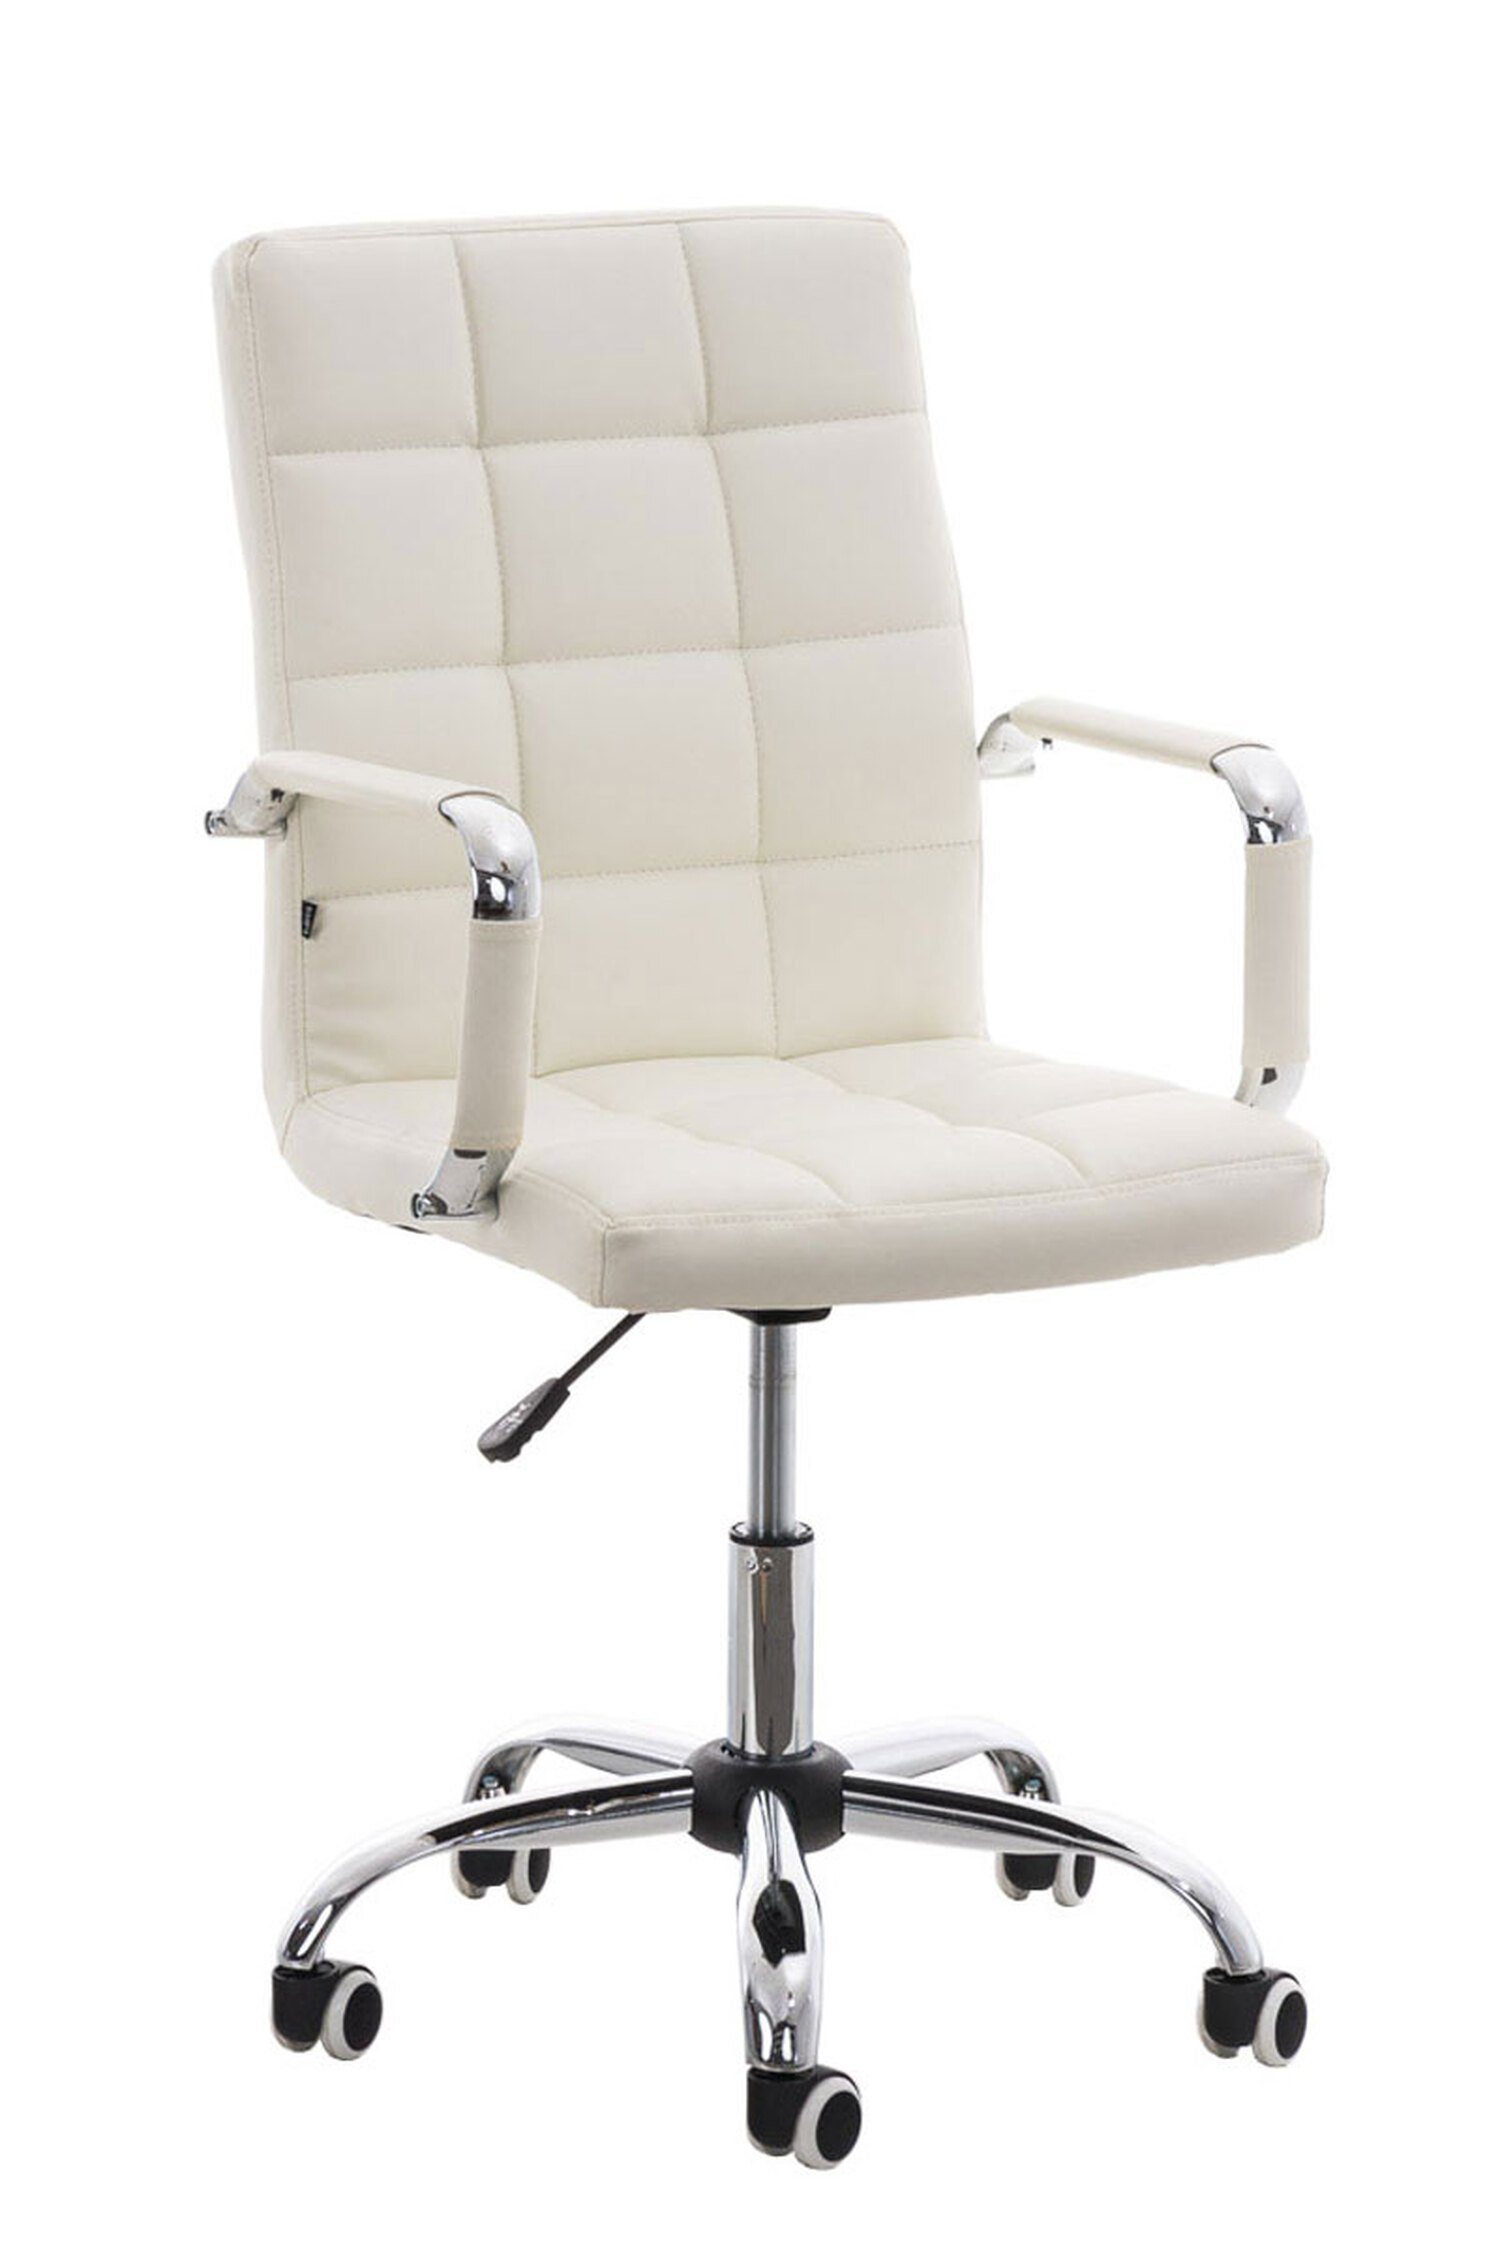 TPFLiving Bürostuhl Deal V2 mit bequemer Rückenlehne (Schreibtischstuhl, Drehstuhl, Konferenzstuhl, Chefsessel), Gestell: Metall chrom - Sitzfläche: Kunstleder weiß